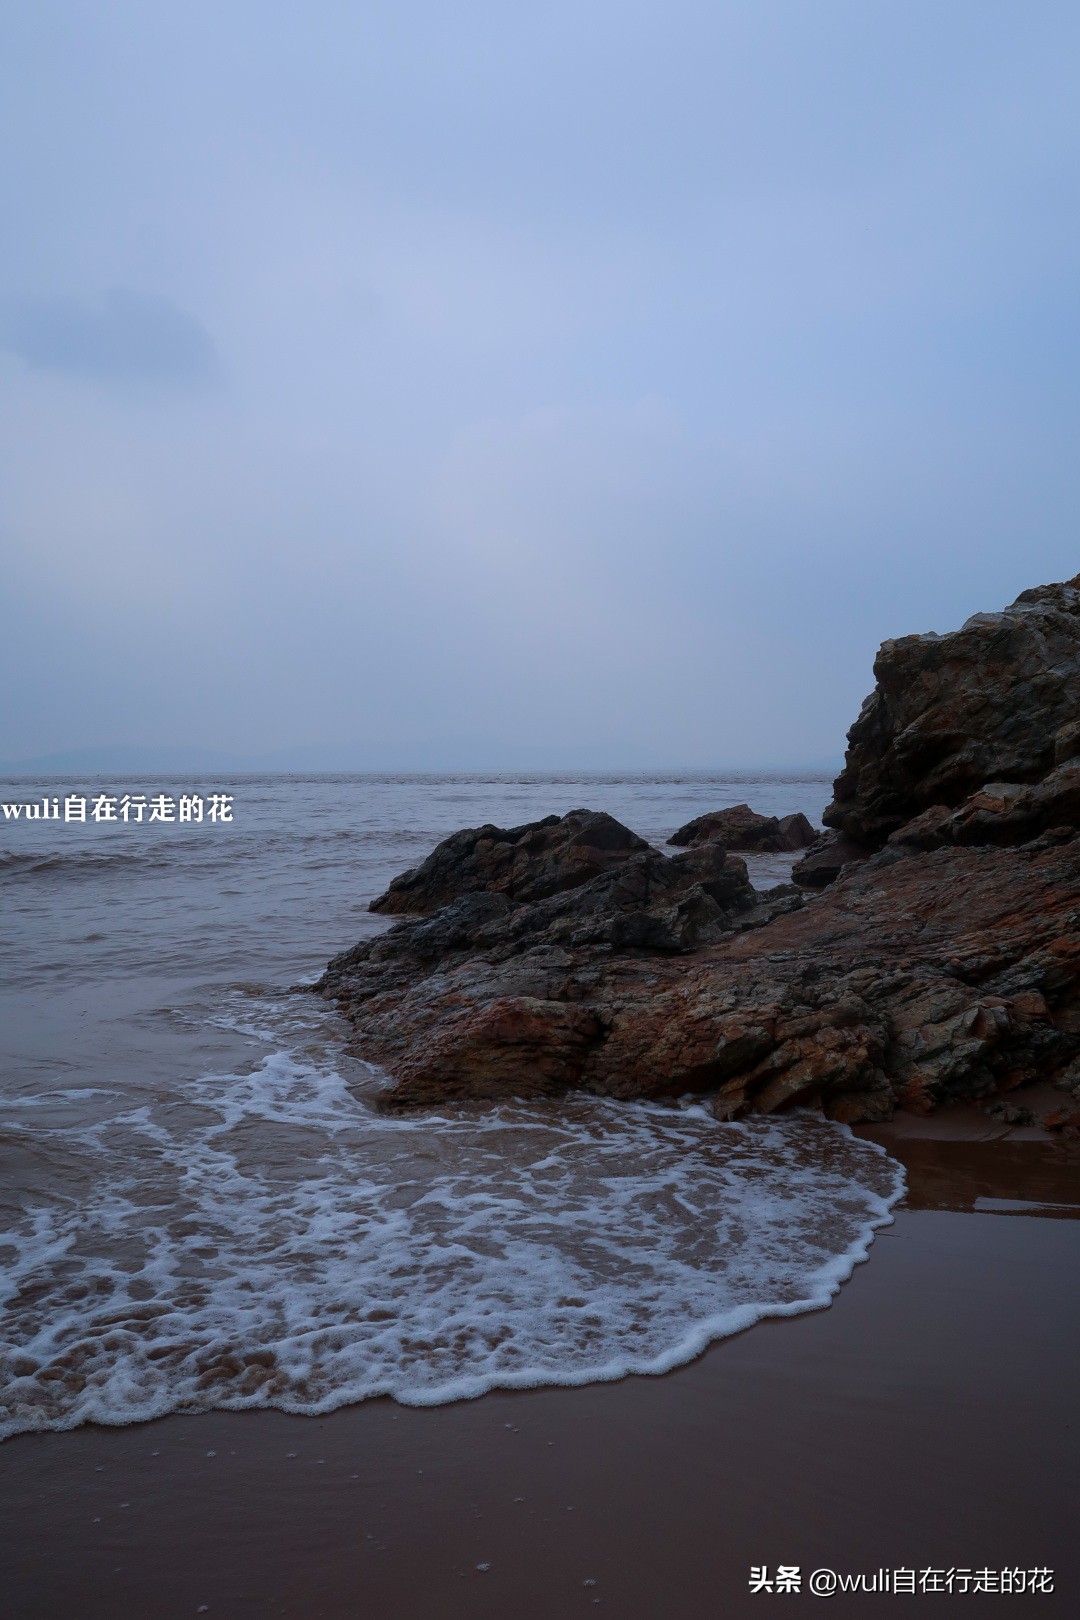 福州长乐-琅岐-壶江岛一日游 | 借着夏天的名义，一起去看海吧